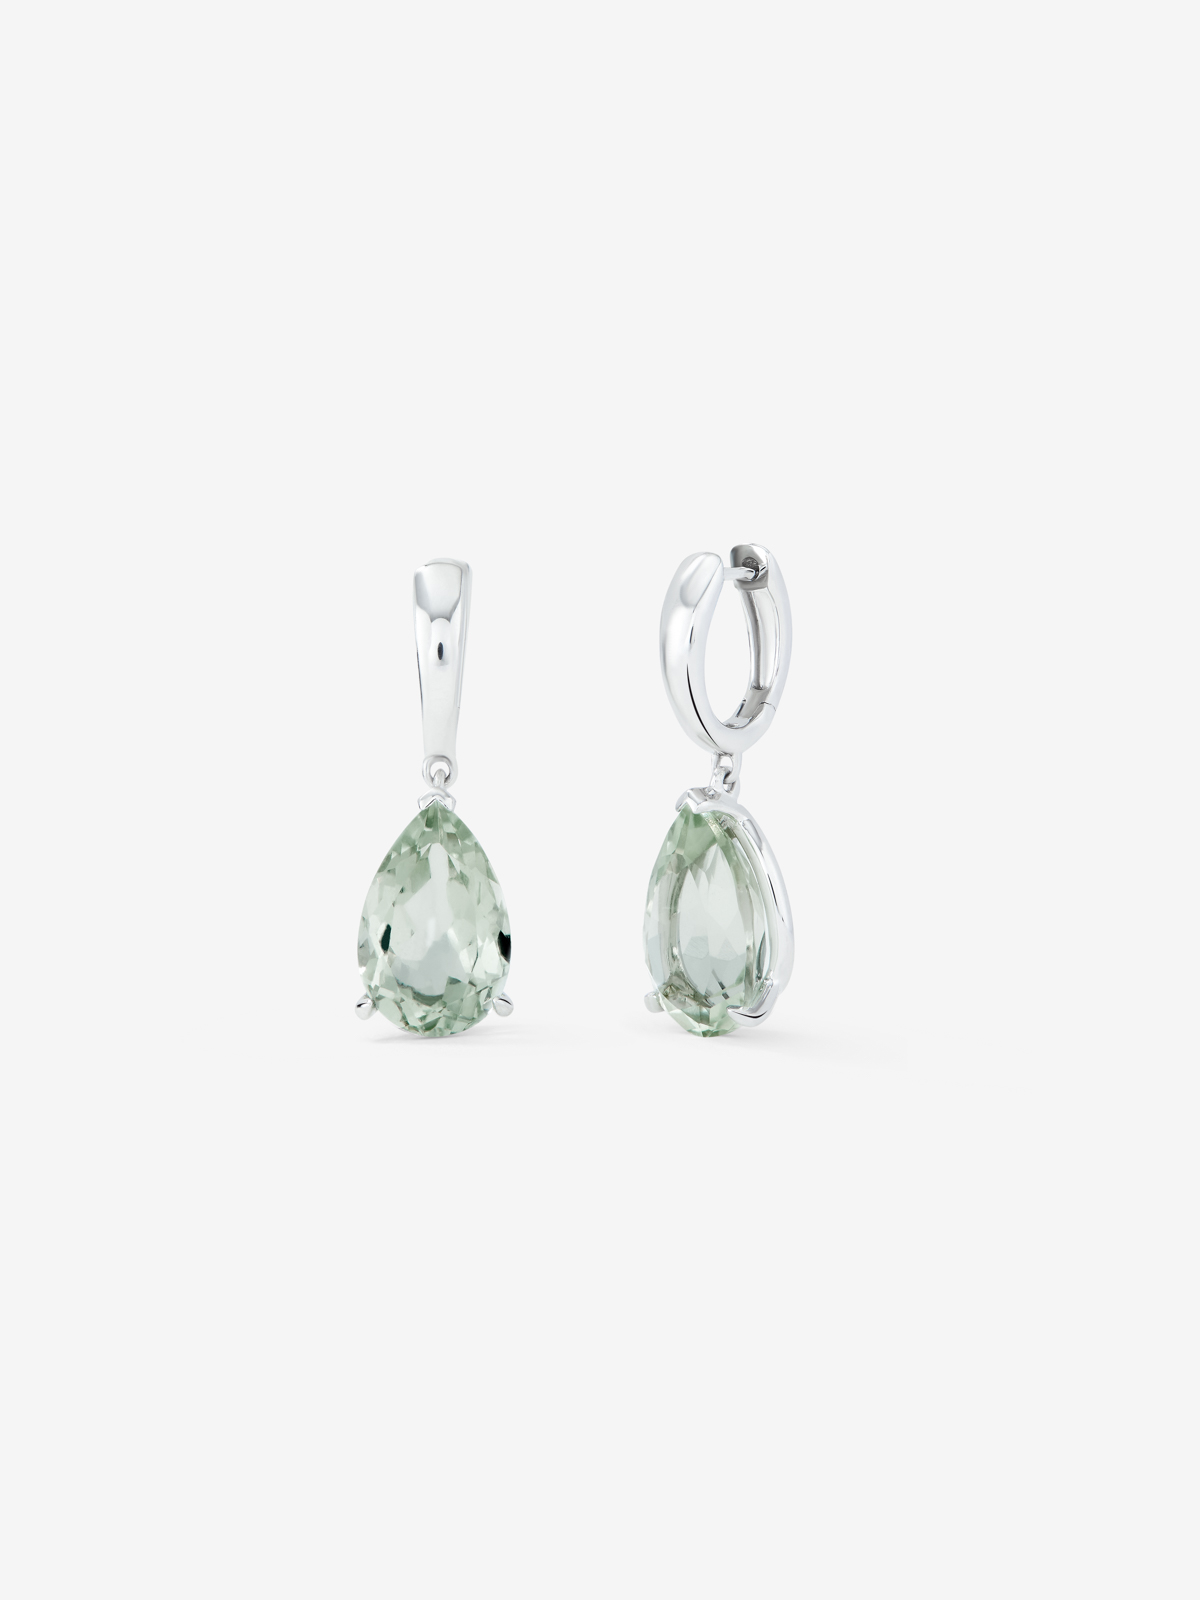 925 Silver hoop earrings with hanging green amethyst